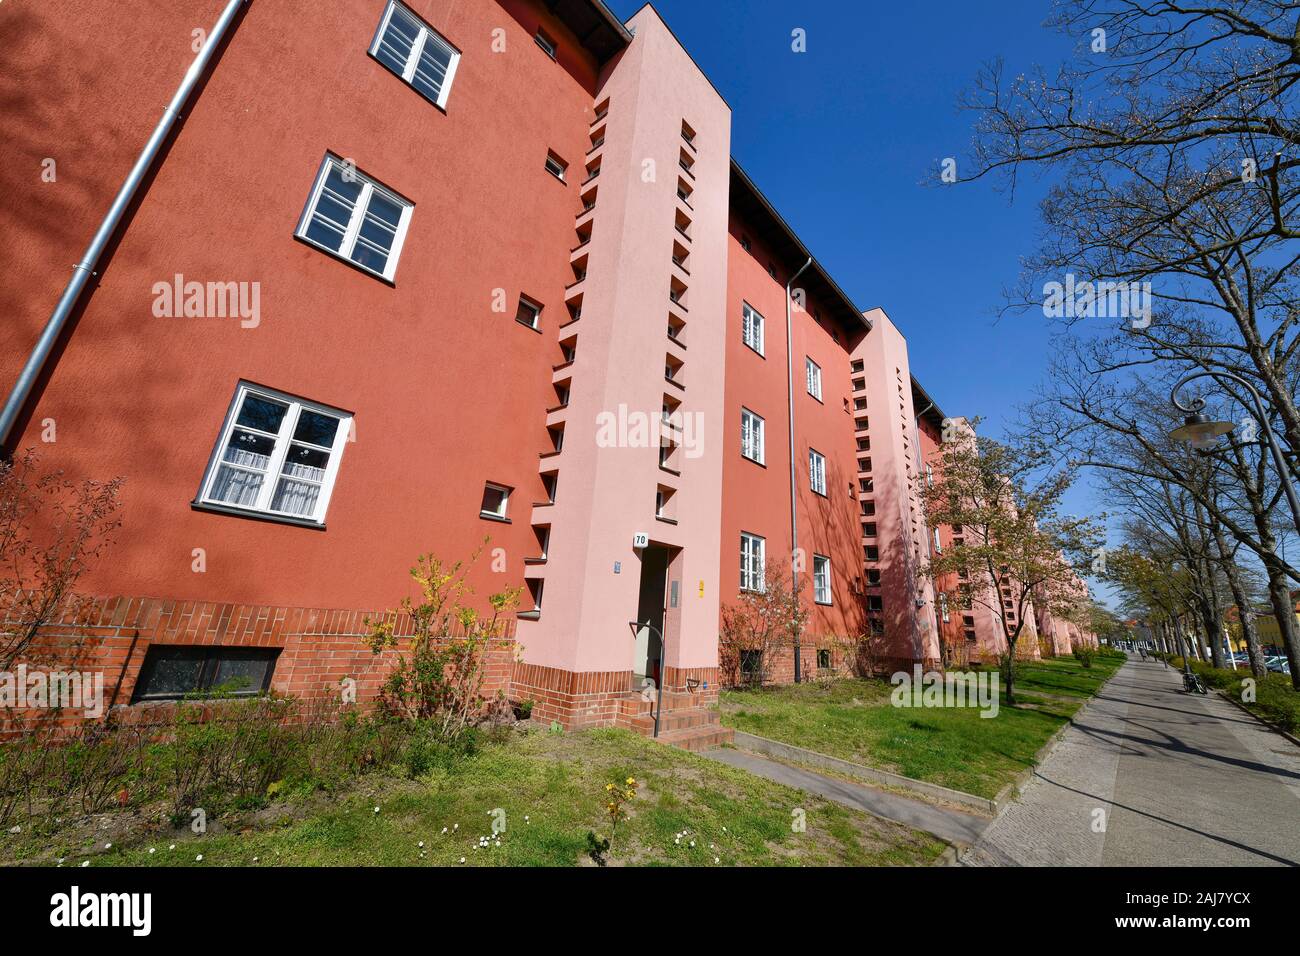 Wohnhaus, Fritz-Reuter-Allee, Hufeisensiedlung, Britz, Neukölln, Berlin, Deutschland Banque D'Images